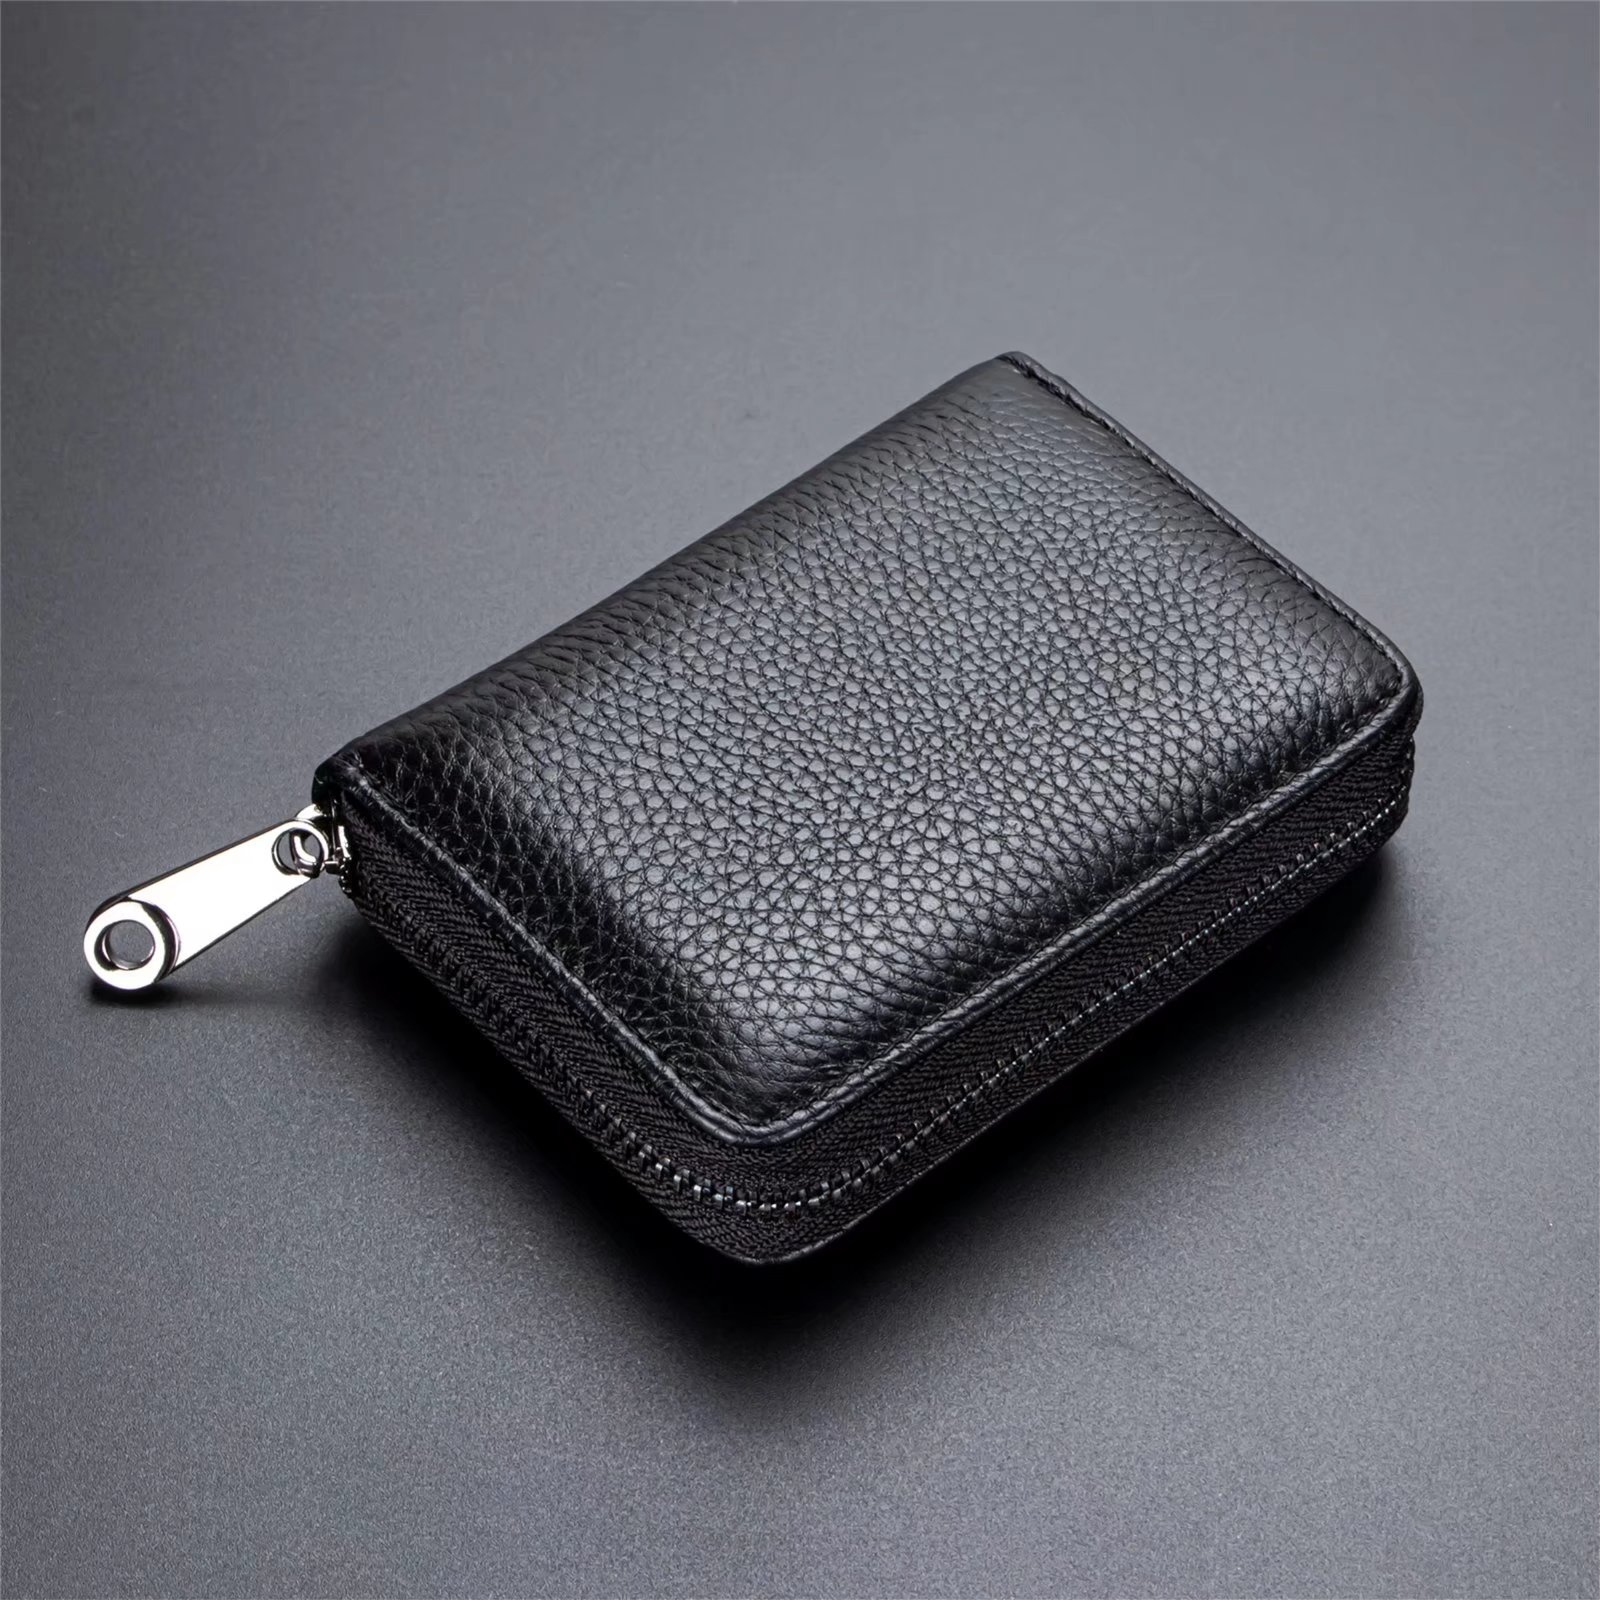 Saipulusi Genuine Leather RFID Blocking Wallet for Women Card Case ...